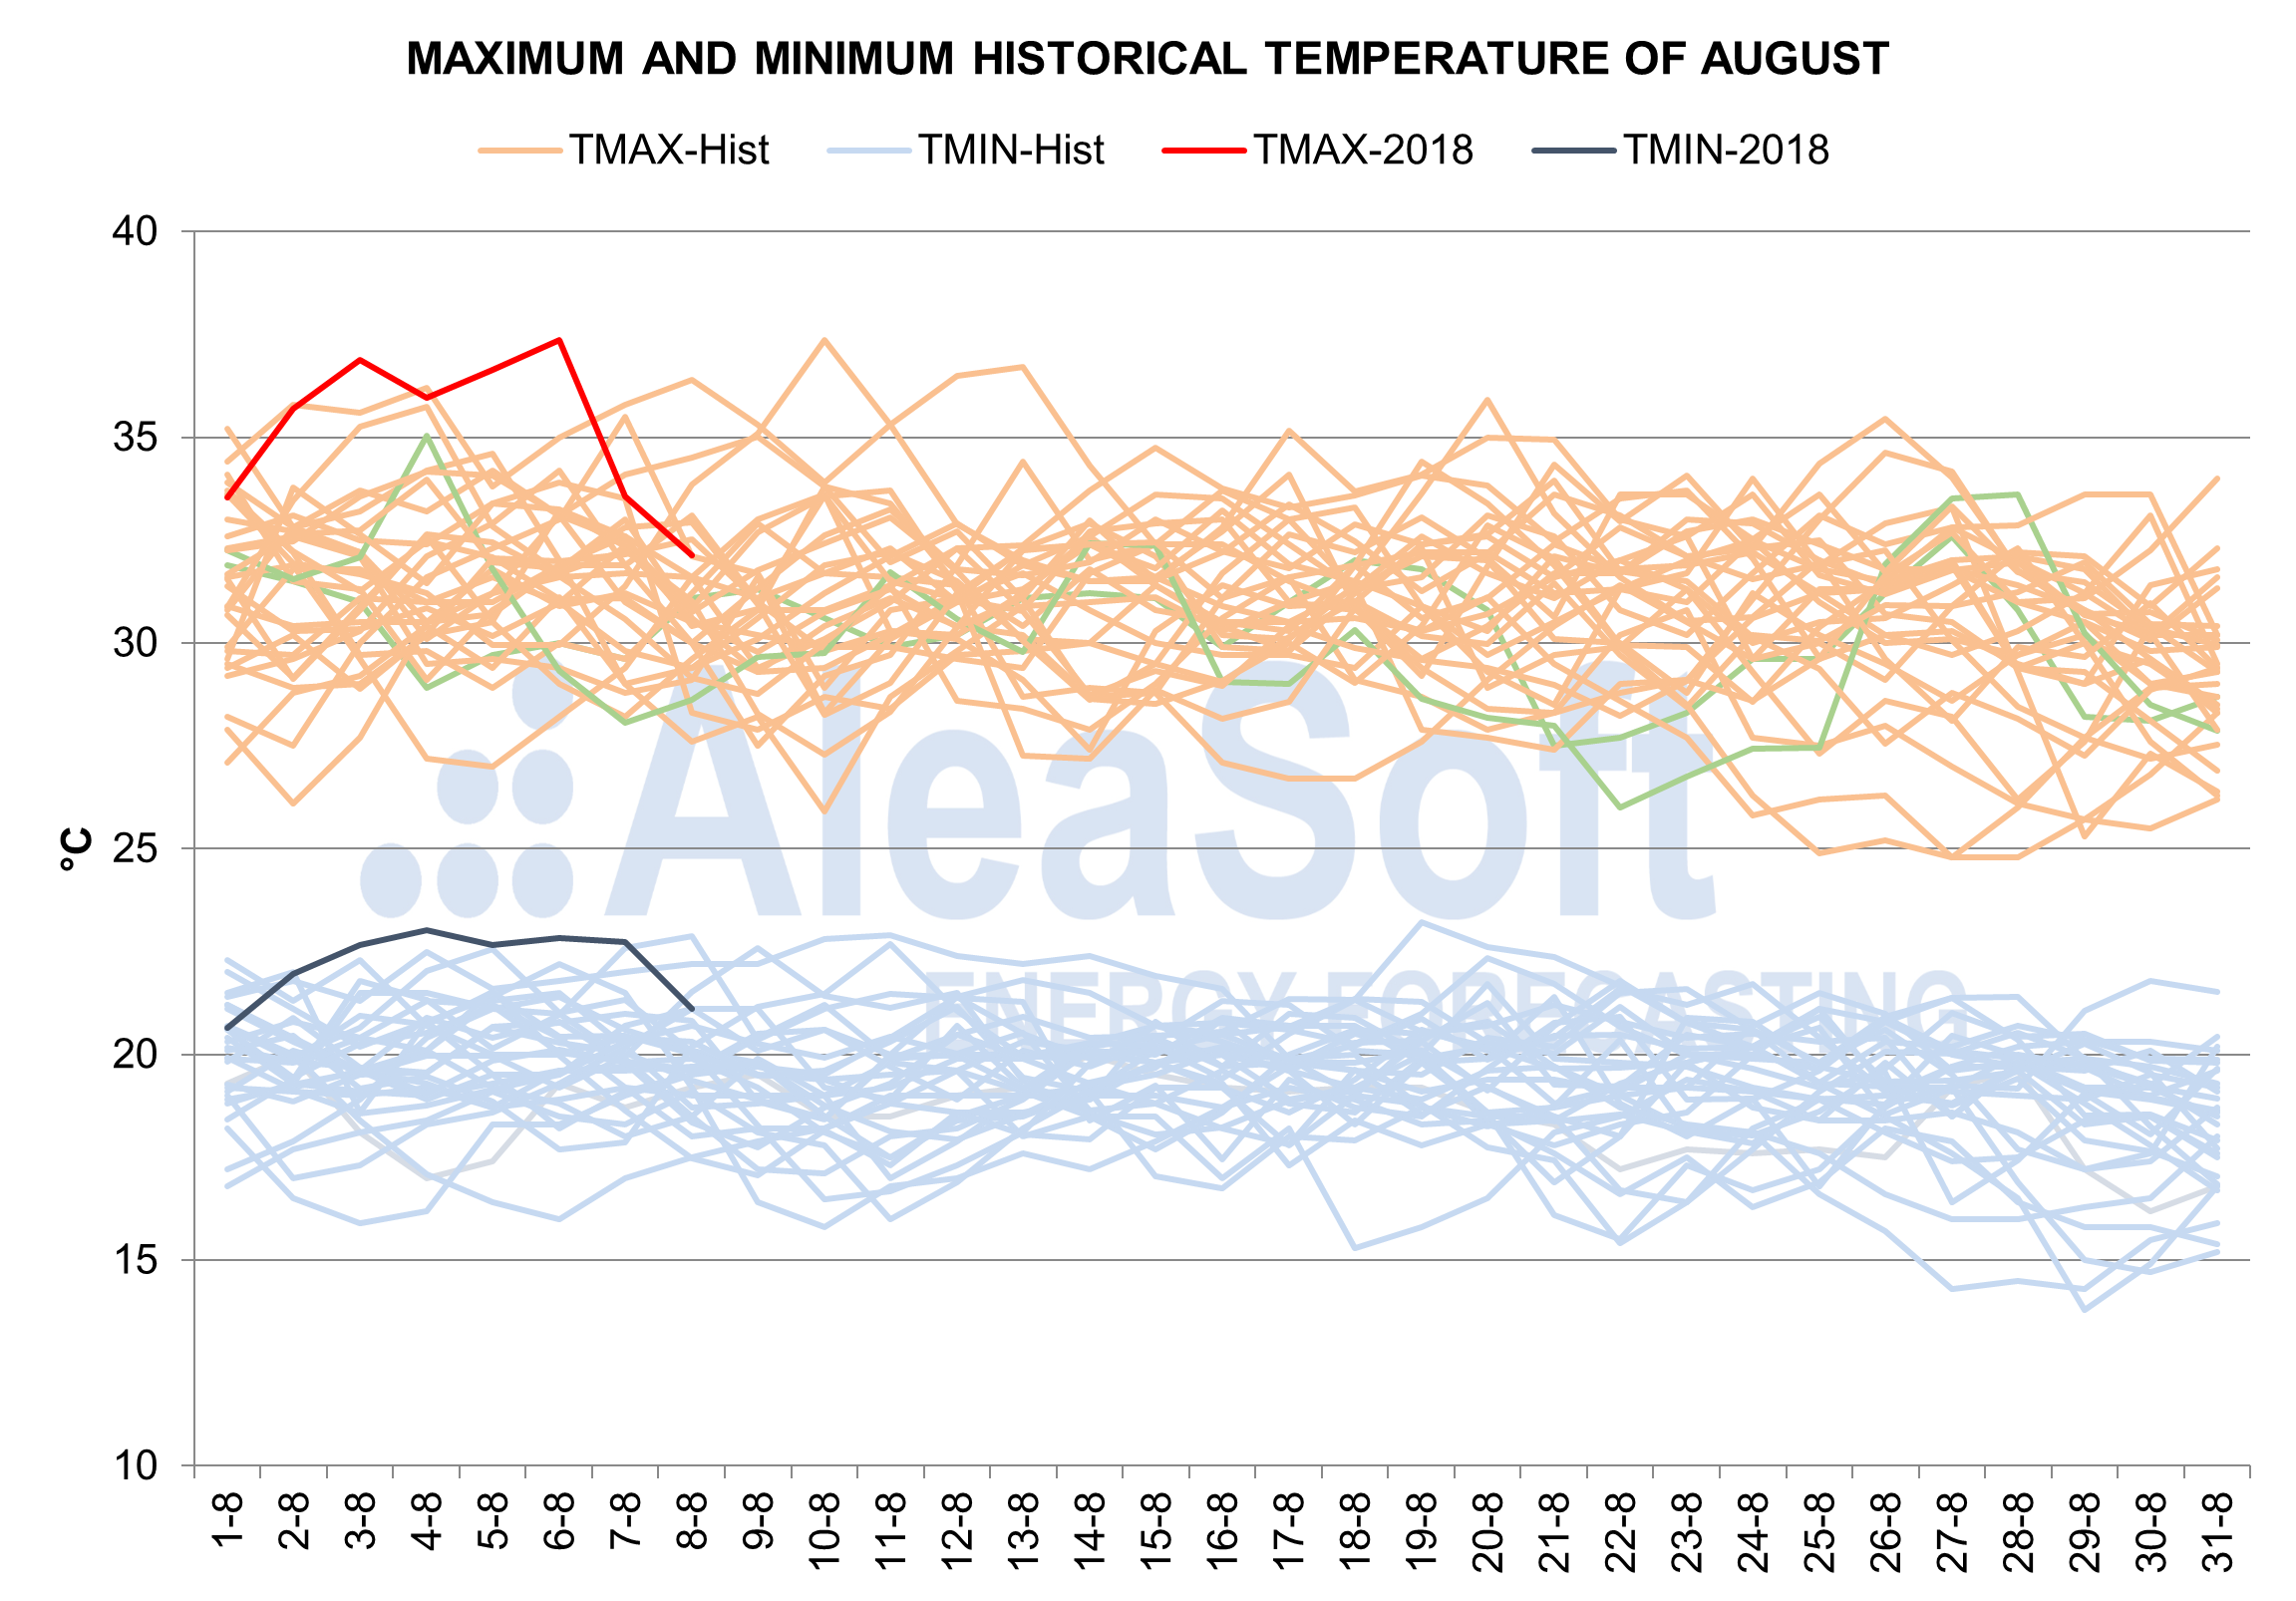 AleaSoft - Maximum and minimum historical temperature of August